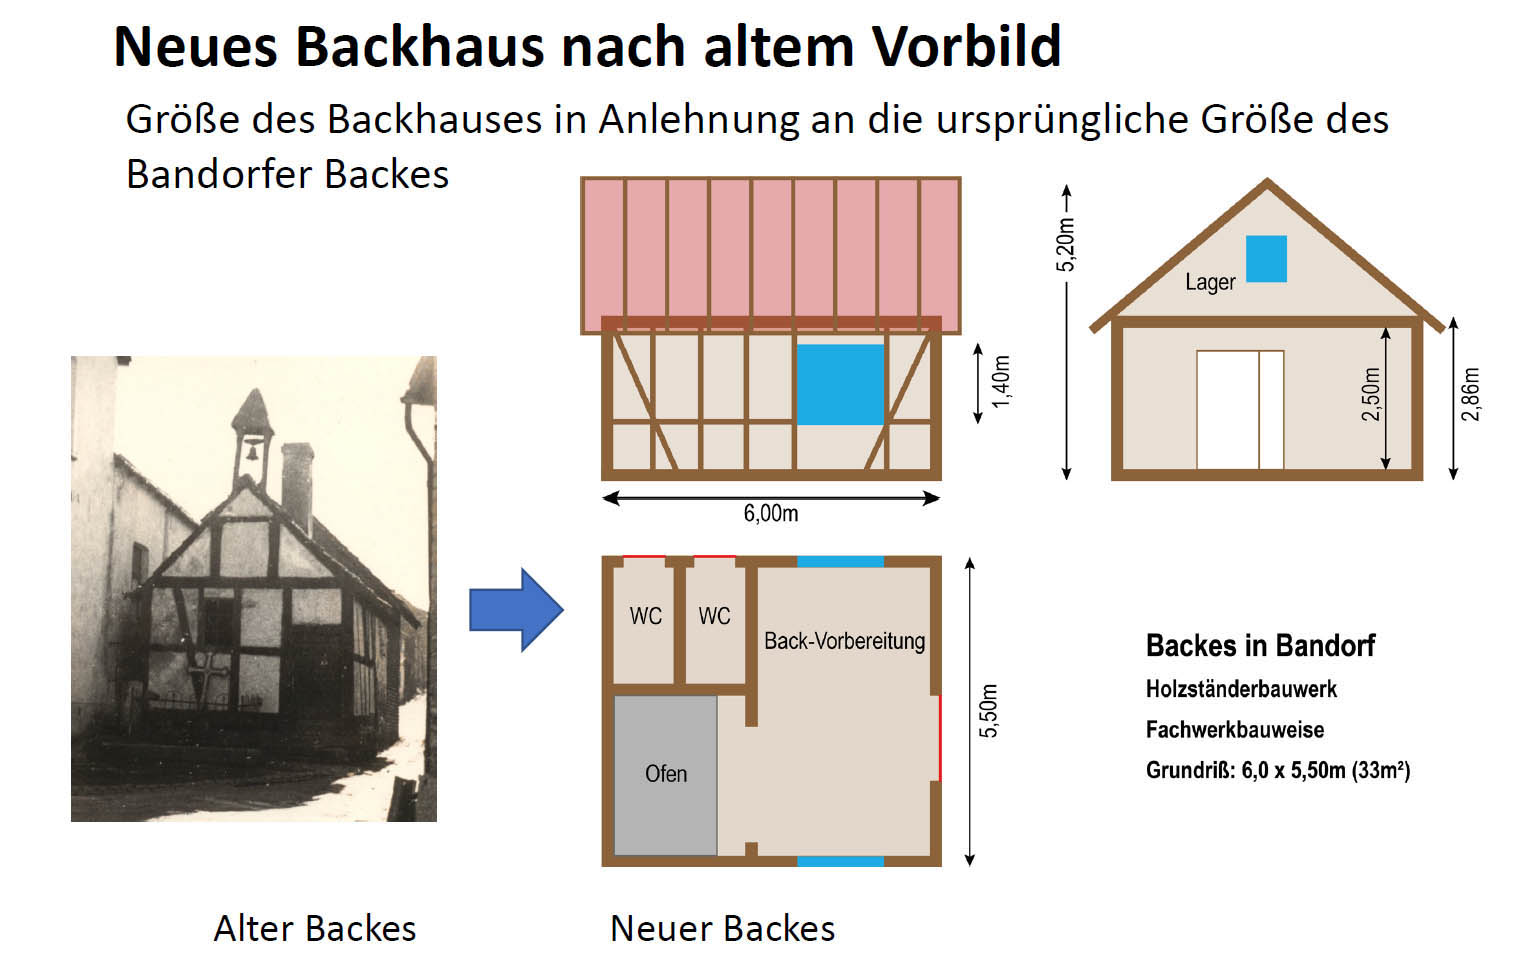 Die Planung für ein neues Backhaus in Bandorf - Bandorfer Backes